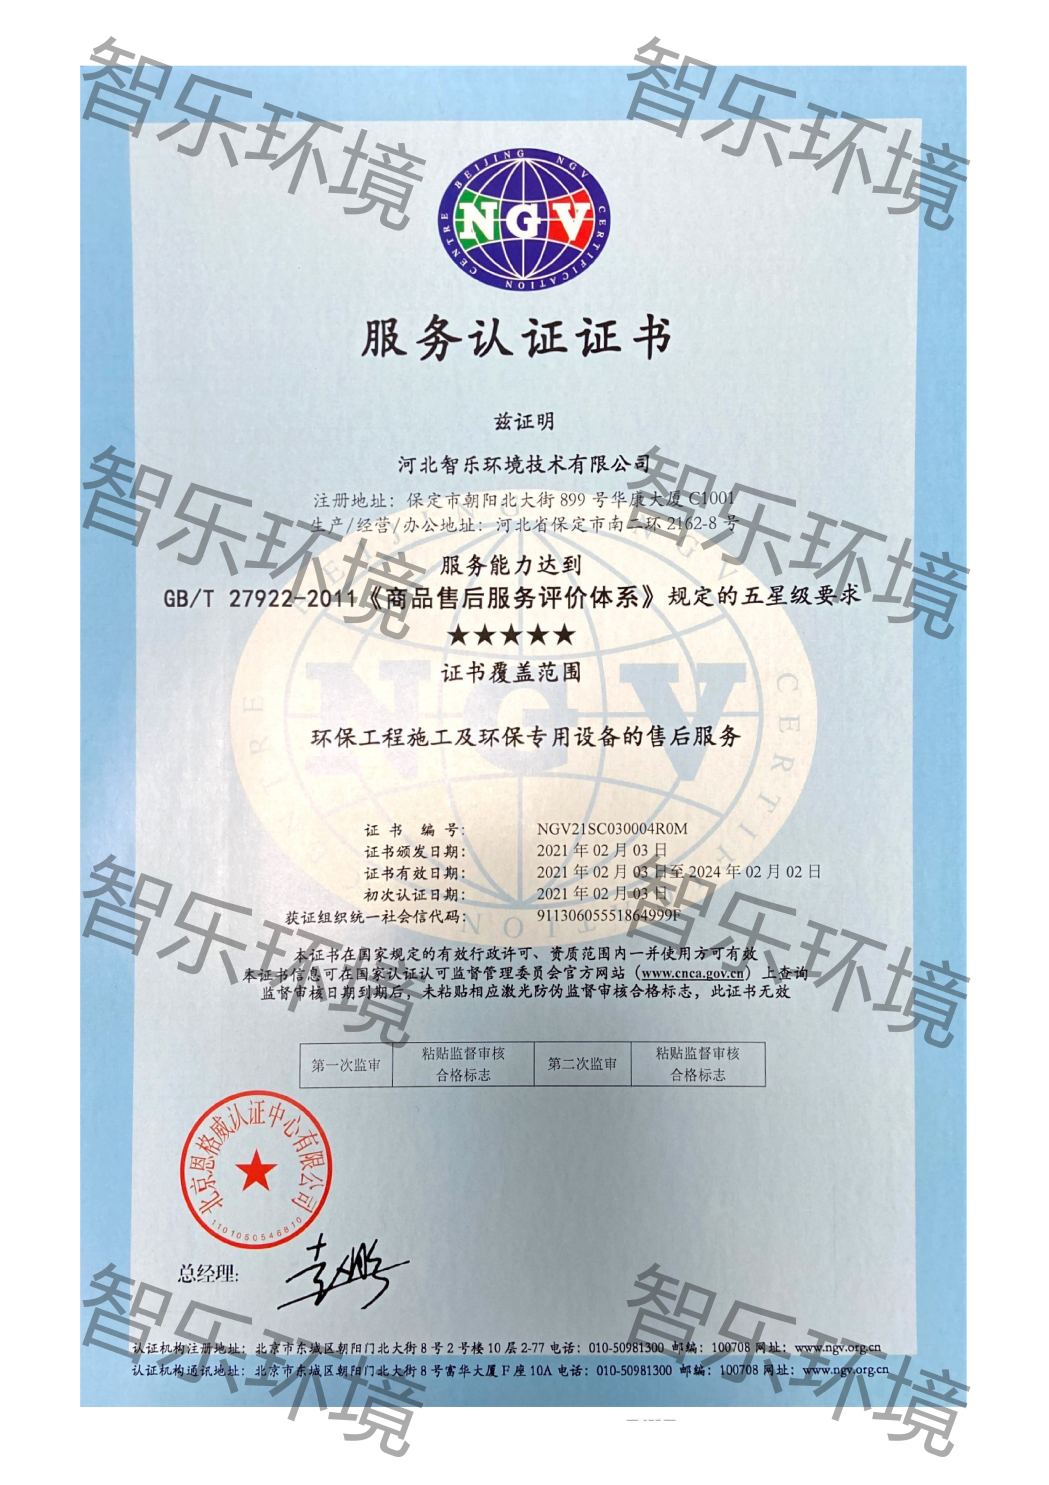 中国商品售后服务评价体系五星级认证证书